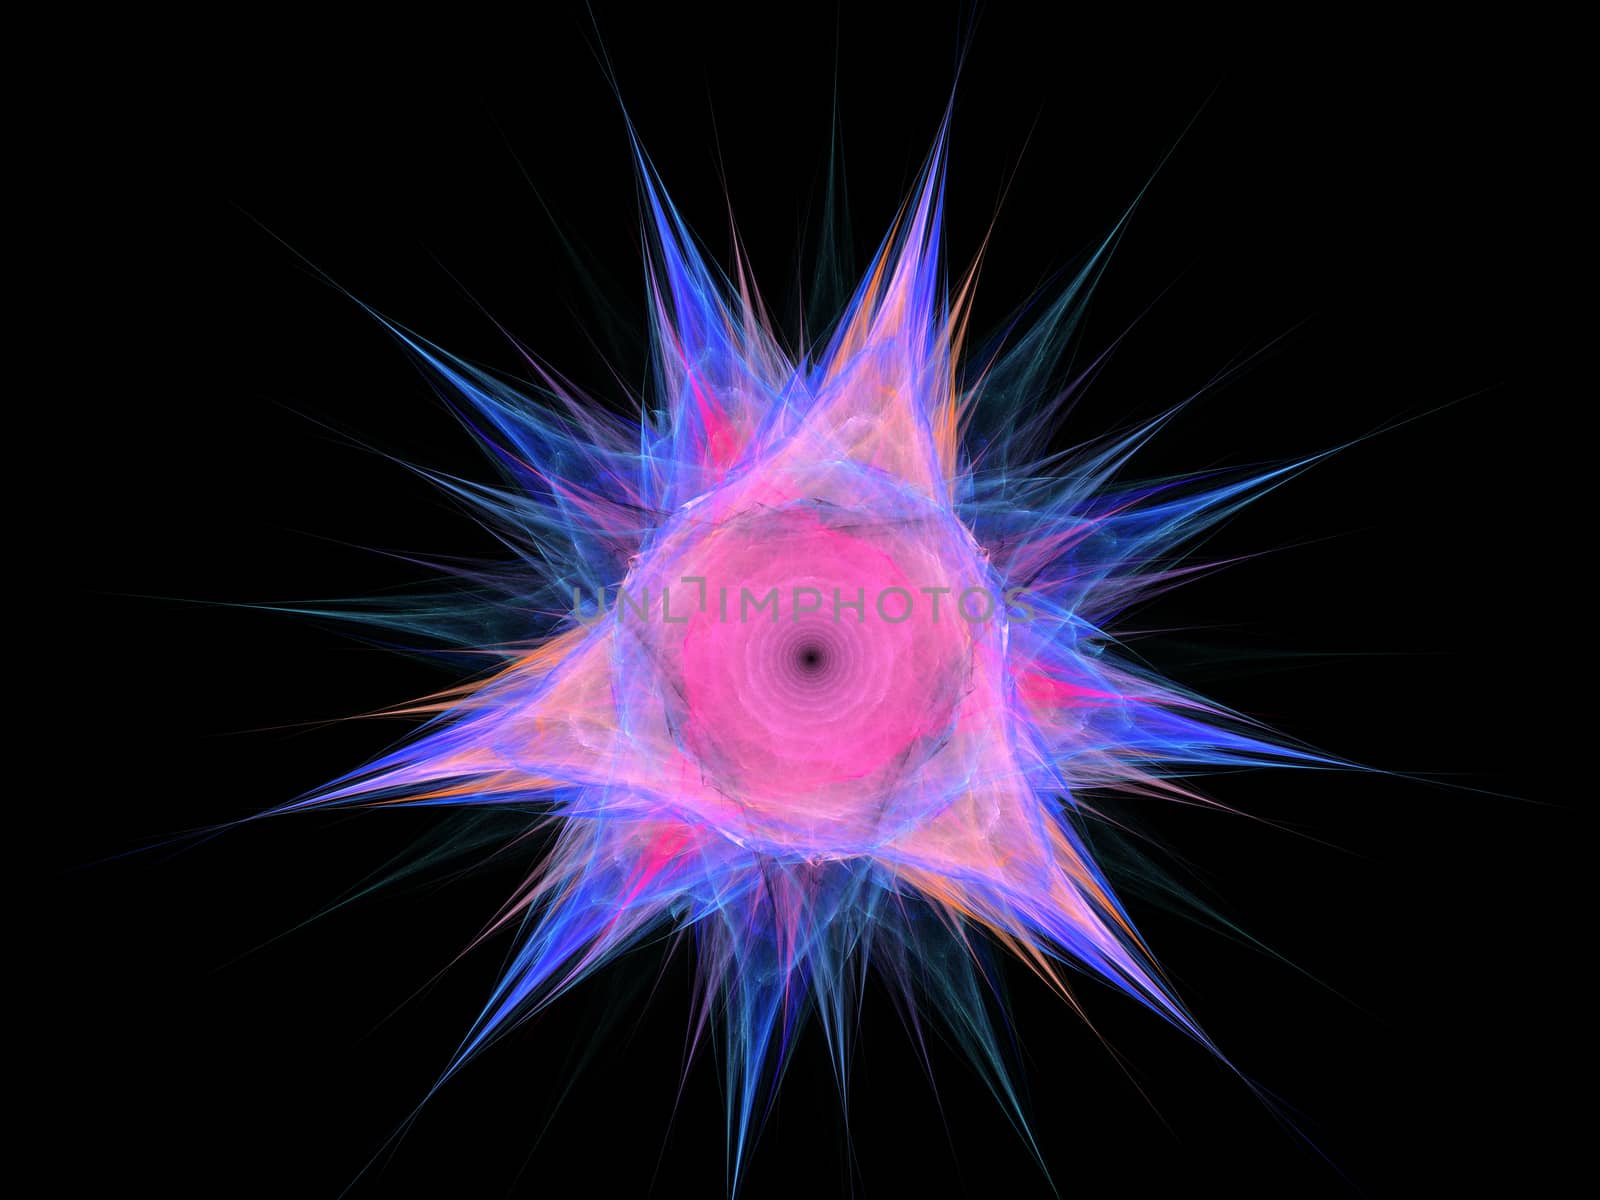 Fractal flower, digital artwork for creative graphic design by Sem007